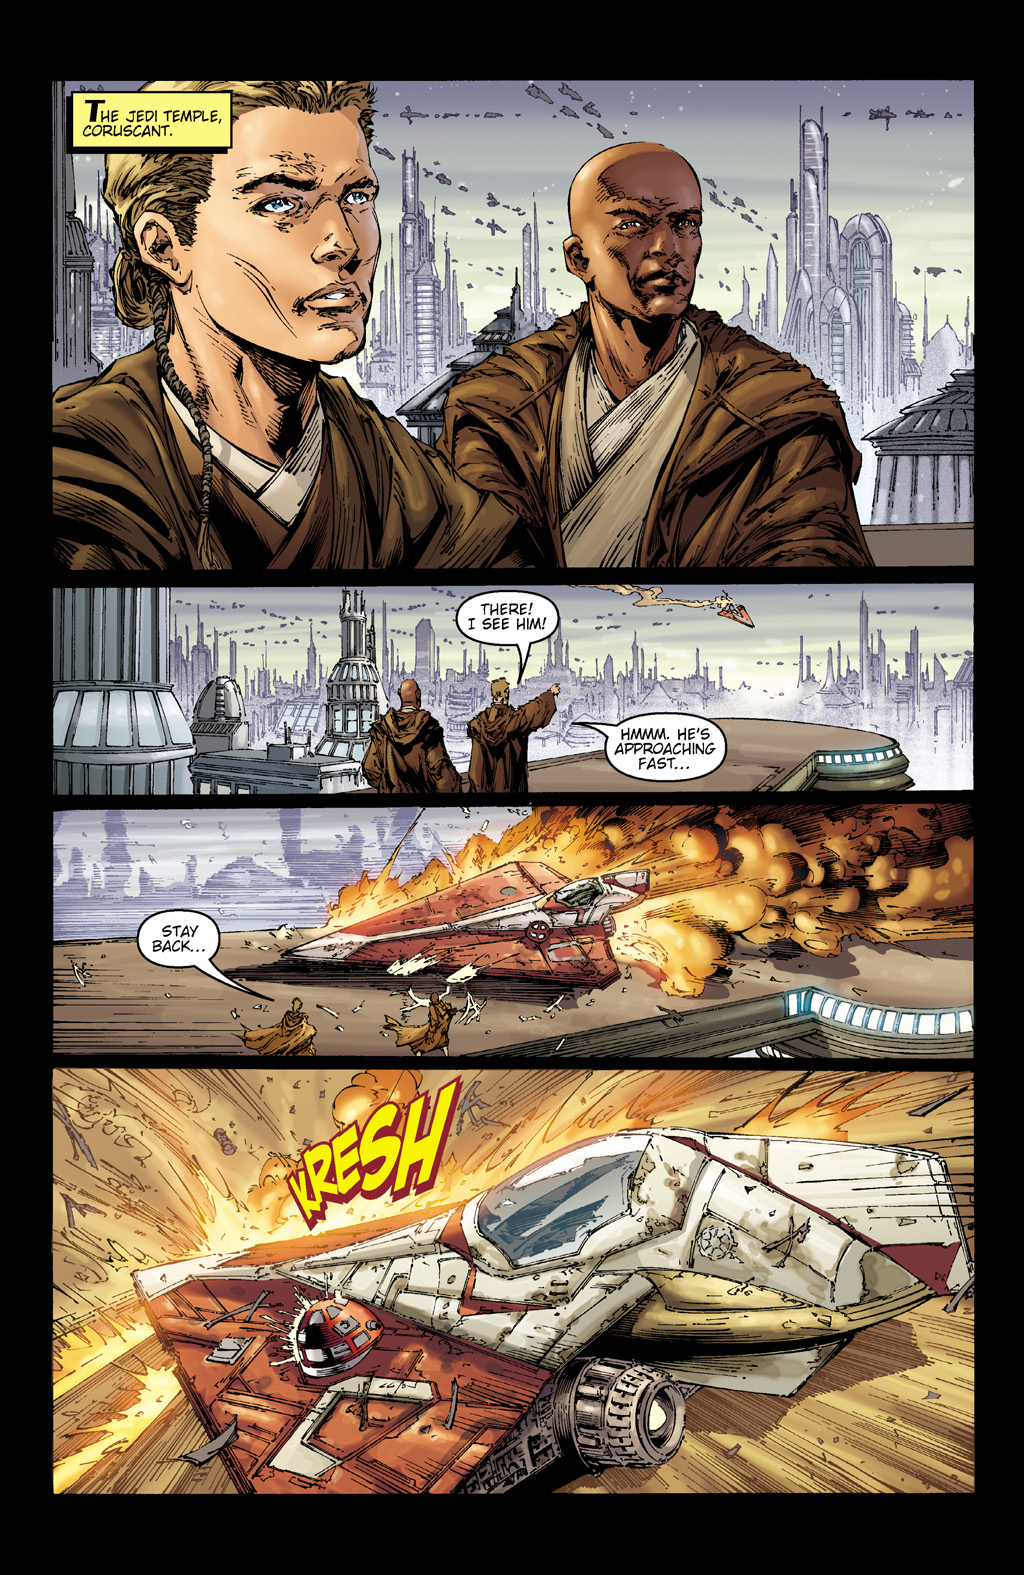 Read online Star Wars: Clone Wars comic -  Issue # TPB 2 - 52